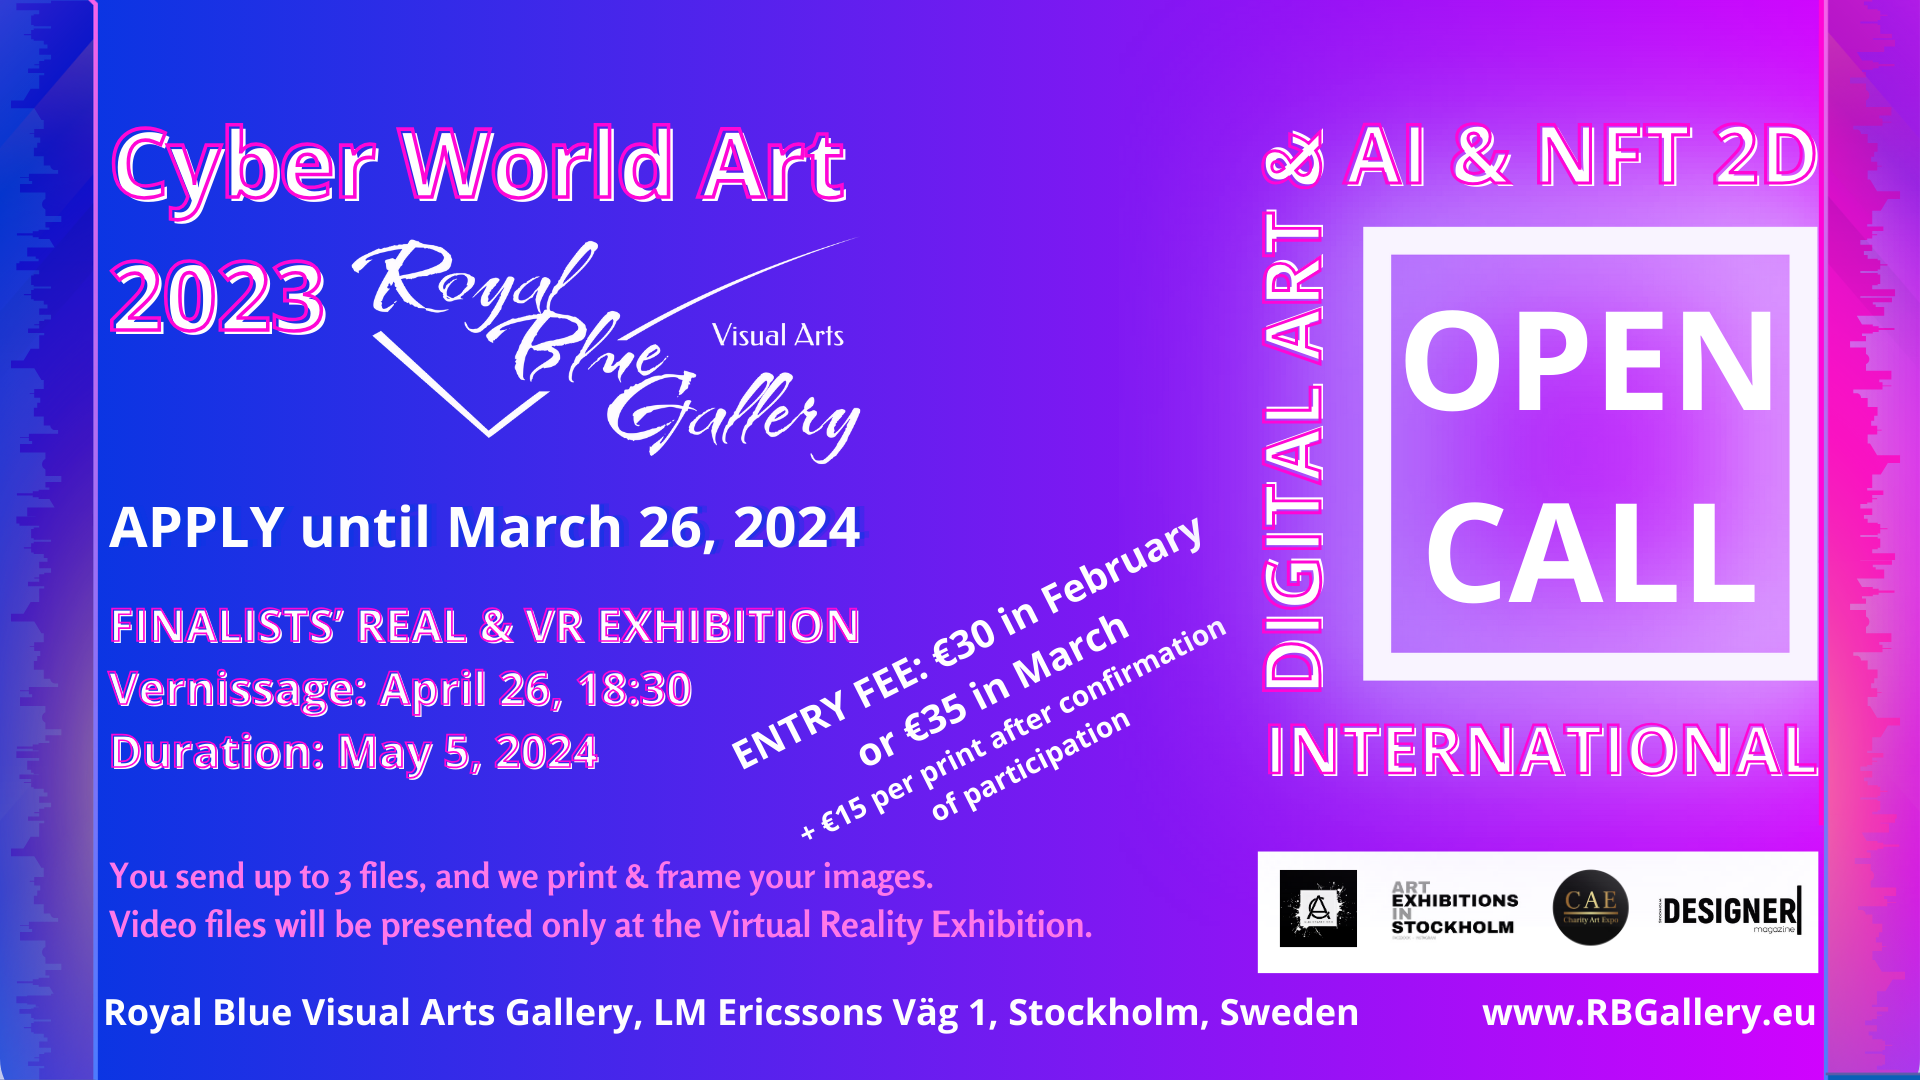 International Open Call: Cyber World Art 2023